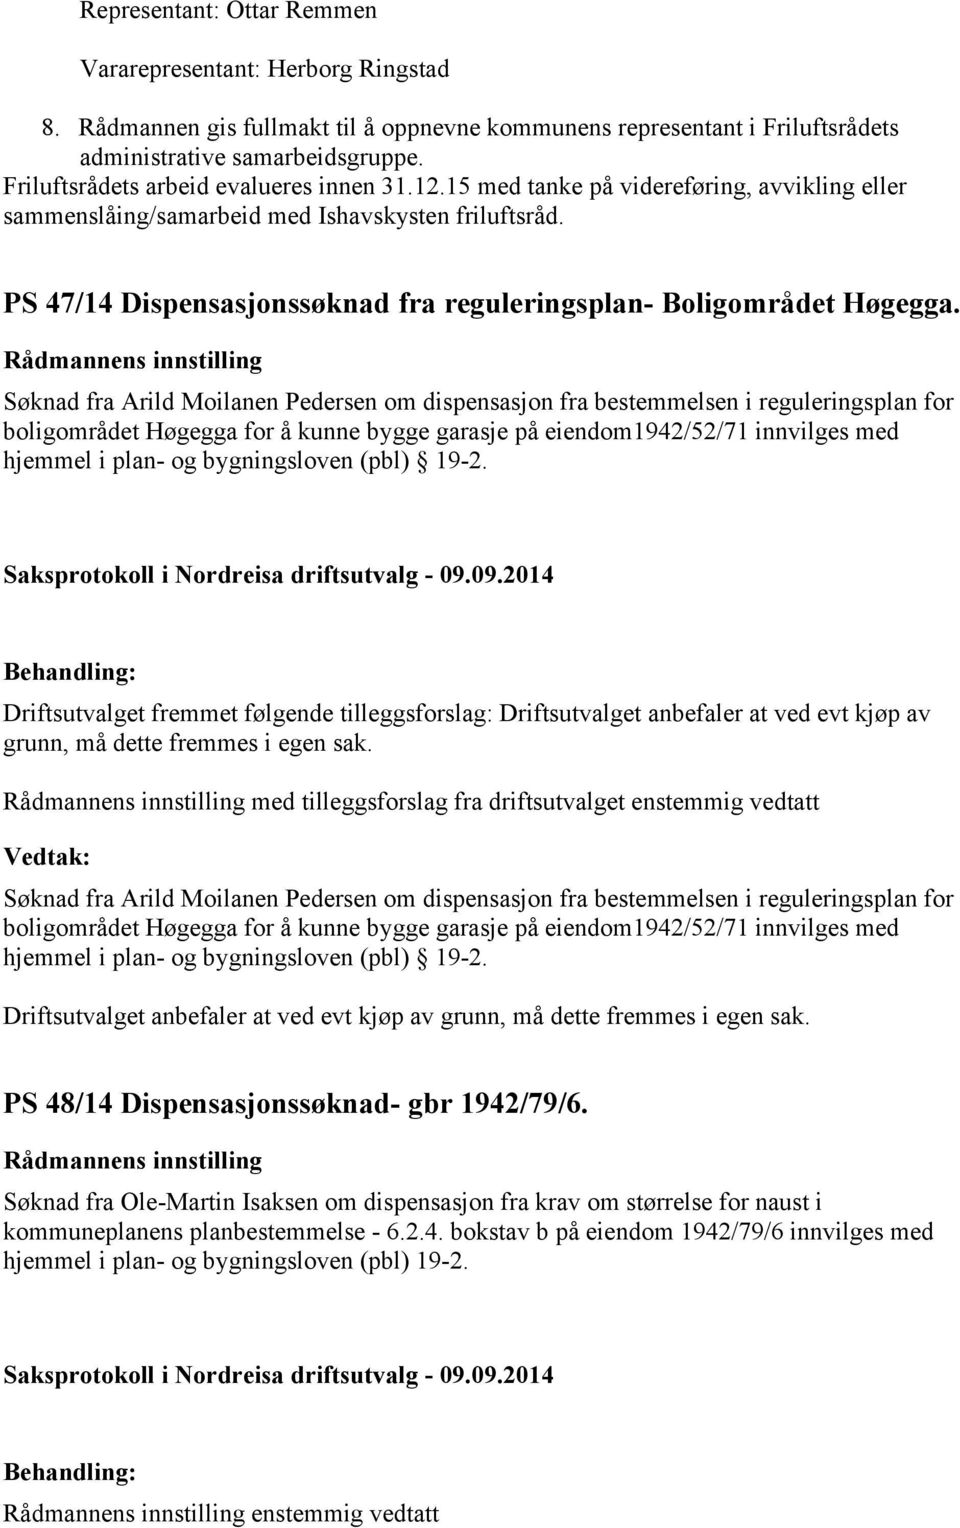 PS 47/14 Dispensasjonssøknad fra reguleringsplan- Boligområdet Høgegga.